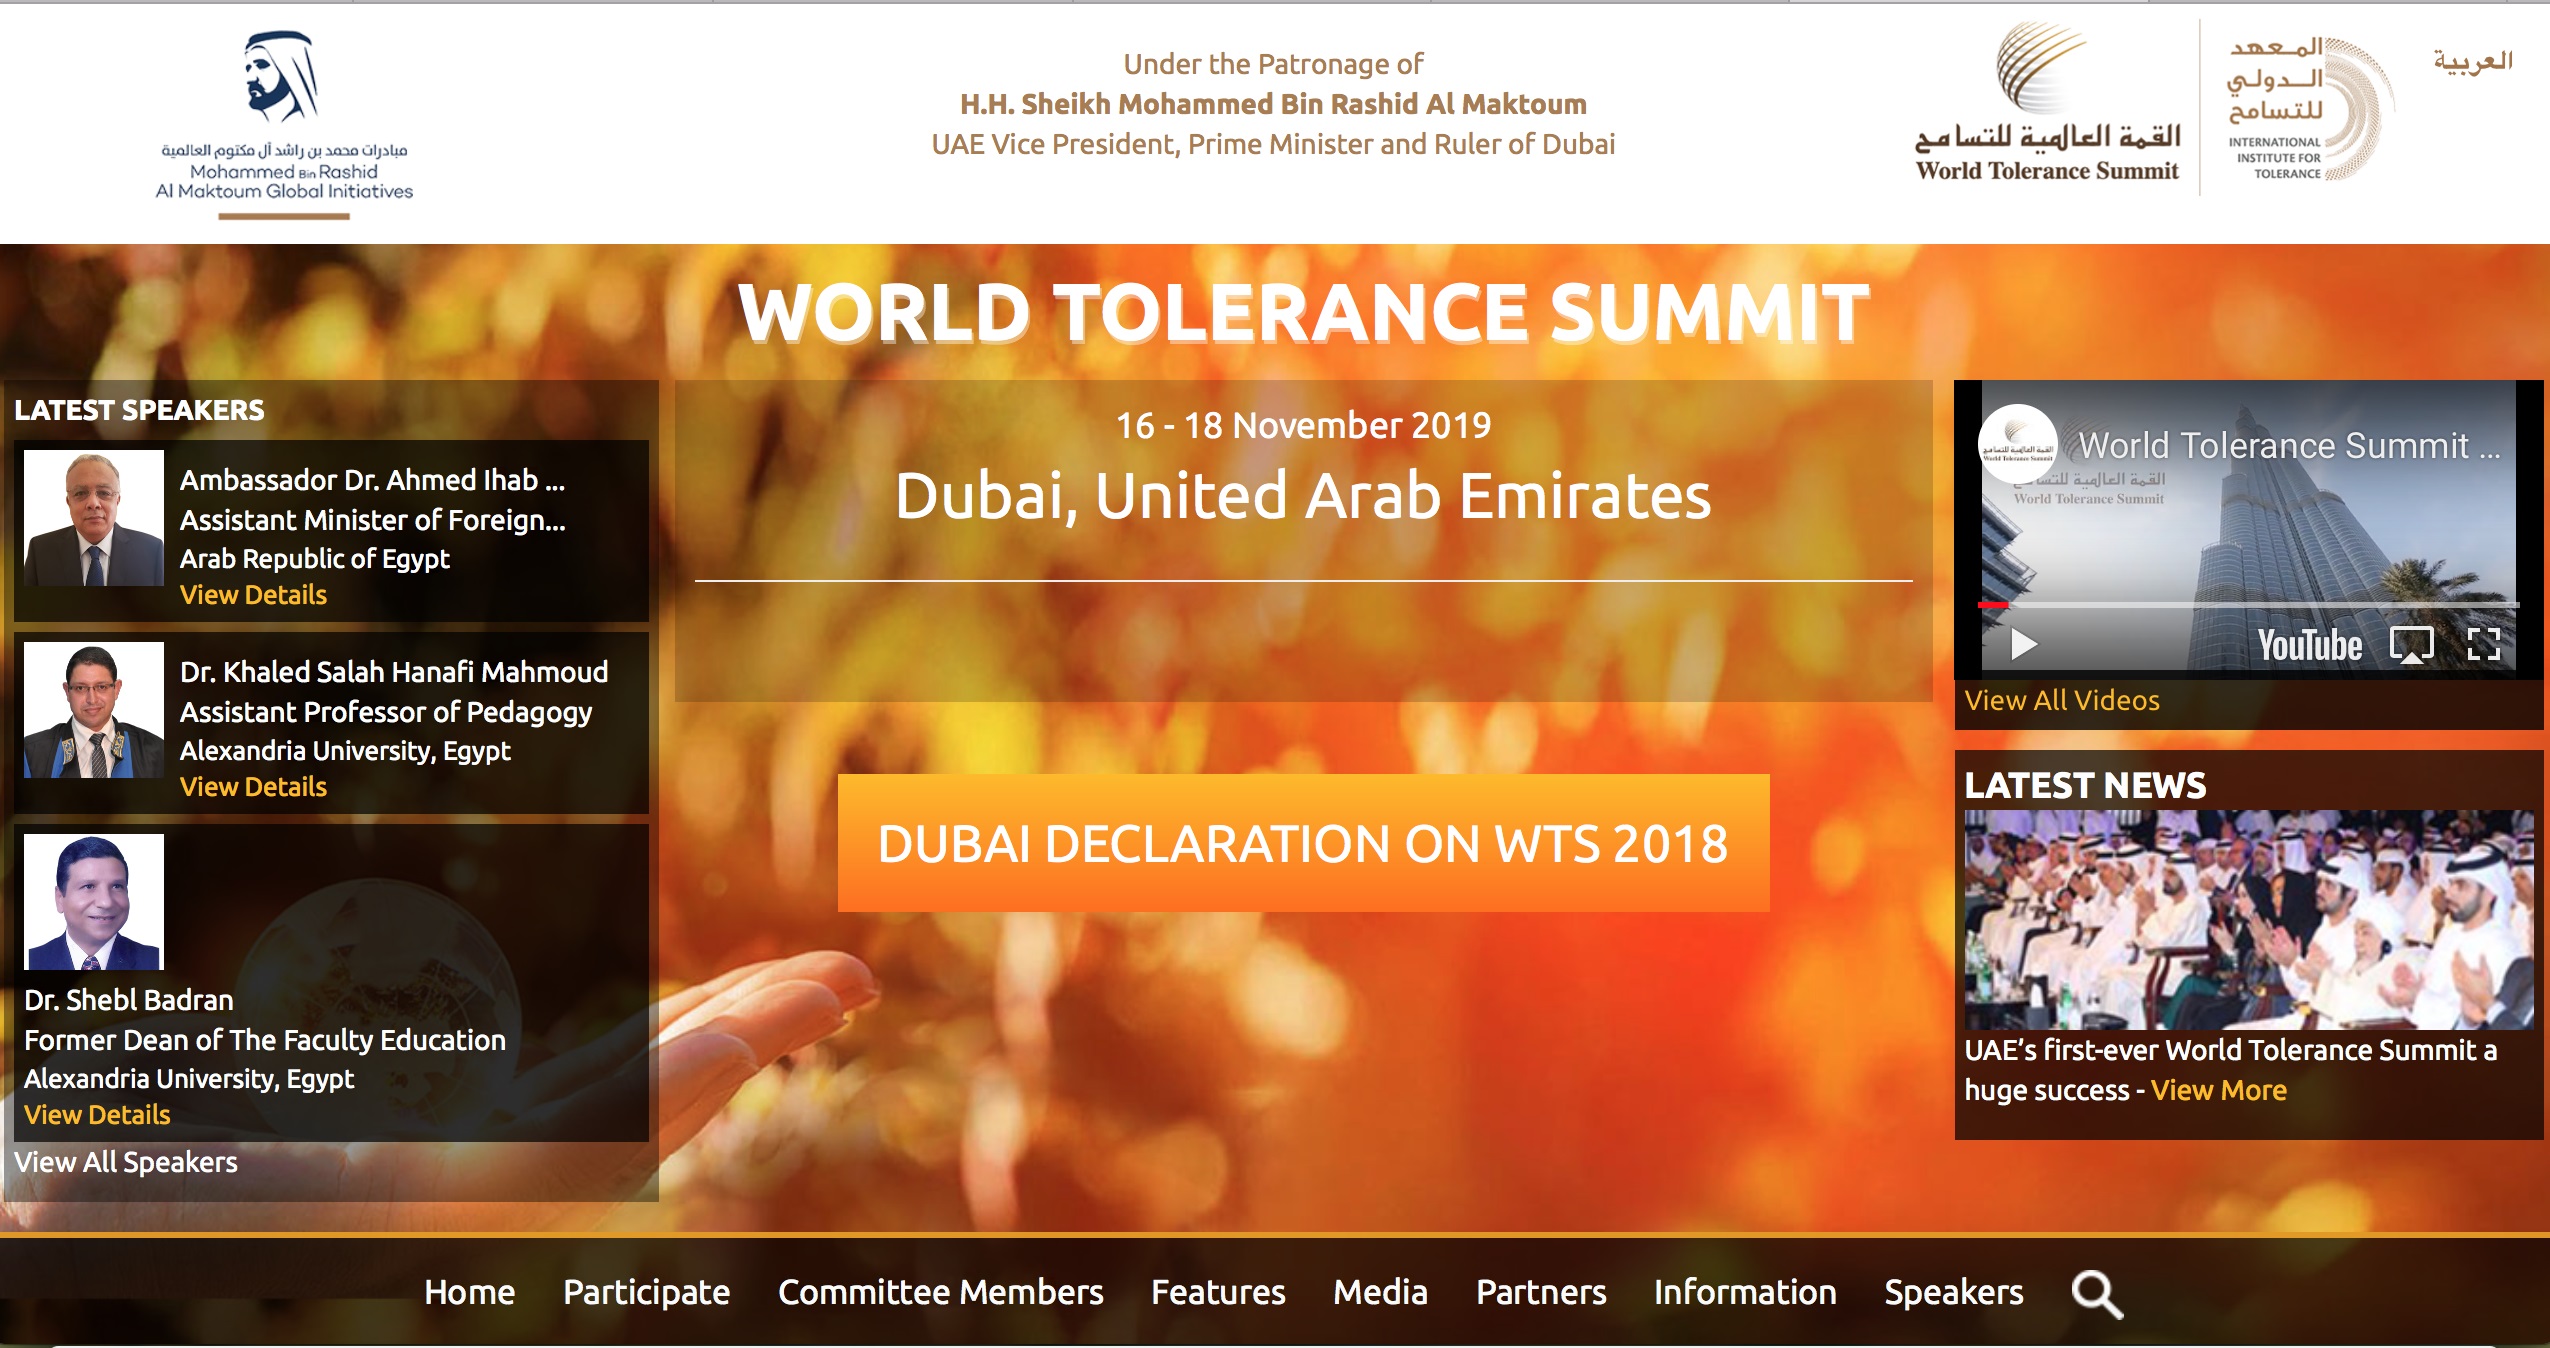 World Tolerance Summit 2019